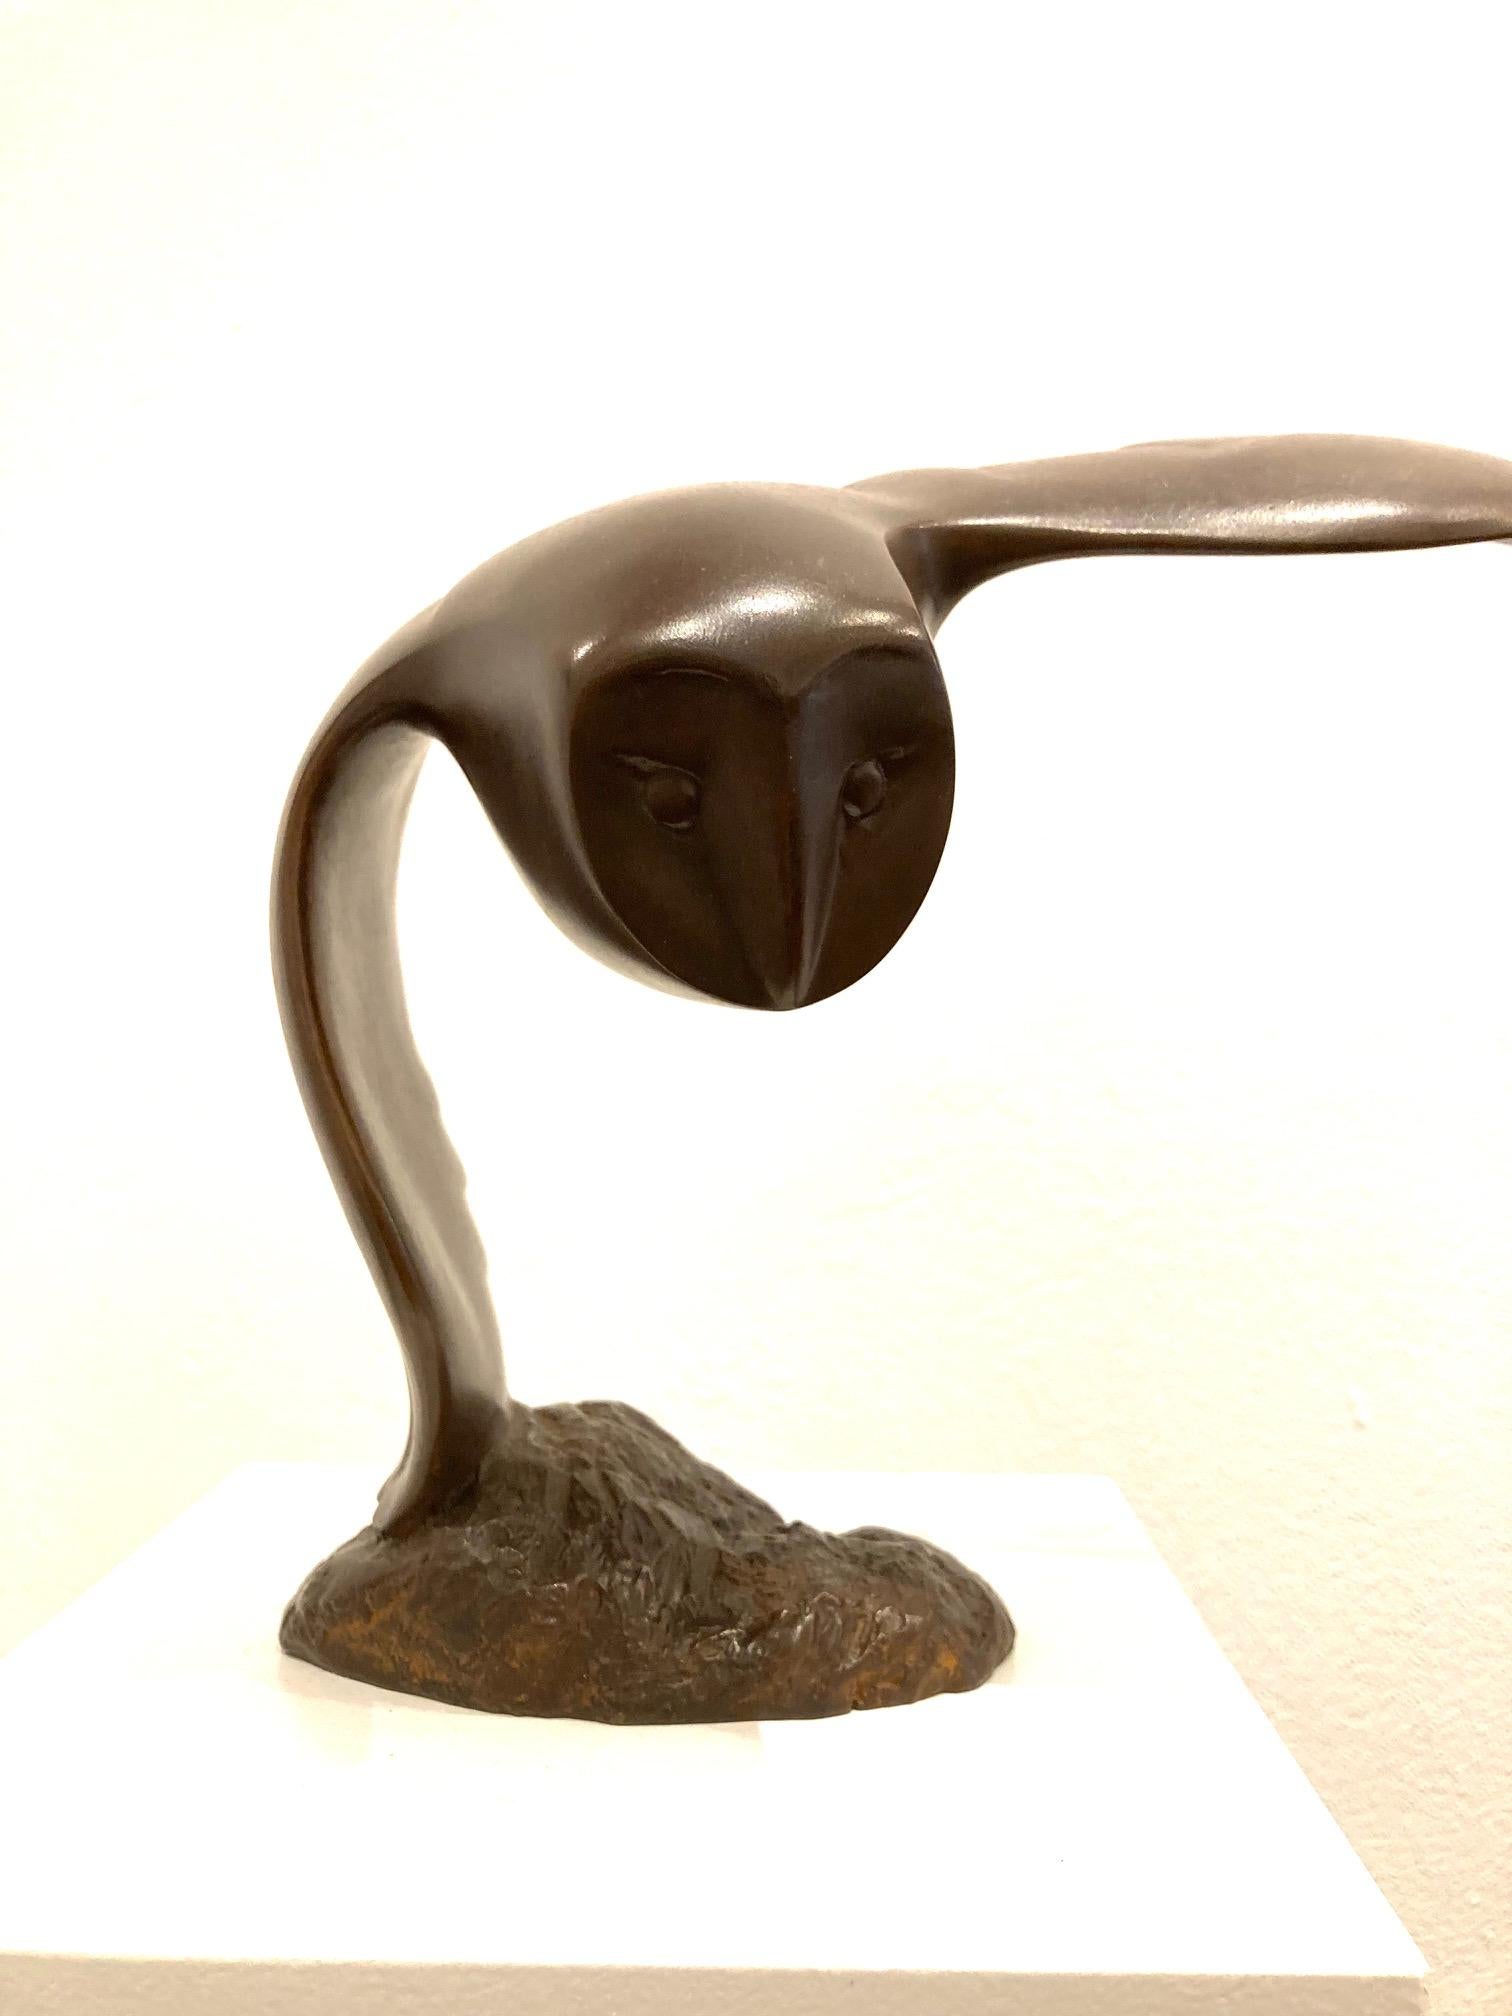 Vliegen Uiltje Bronze Sculpture Petit Hibou Volant Oiseau Animal En Stock 

Evert den Hartog (né à Groot-Ammers, aux Pays-Bas, en 1949) a suivi une formation de sculpteur à l'Académie des arts visuels de Rotterdam. Dans les années 1971-1976, ses